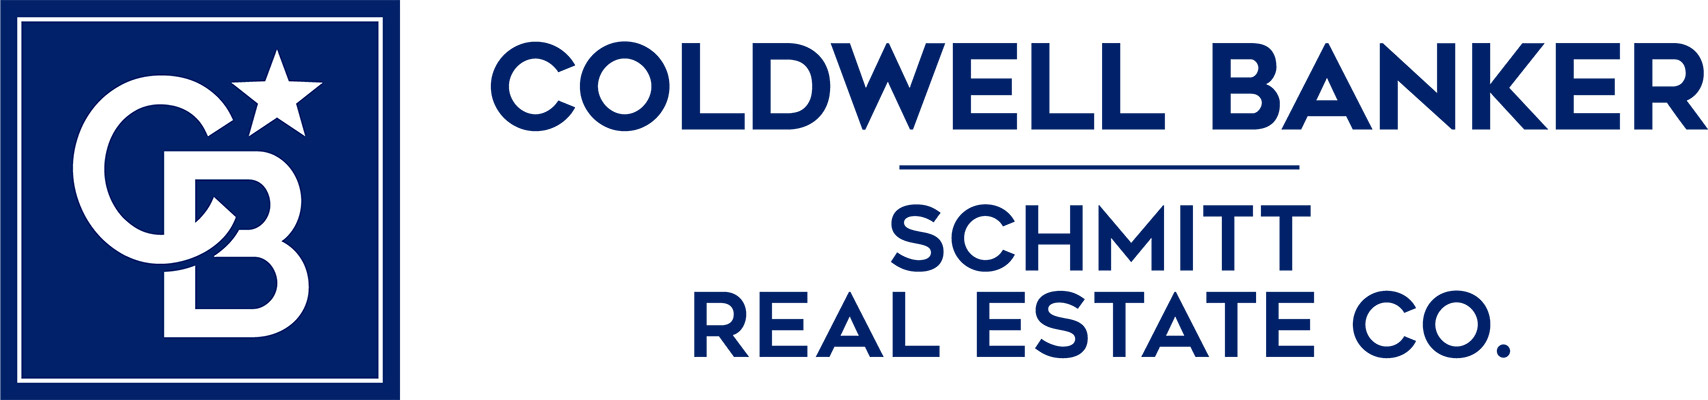 Brian Schmitt - Coldwell Banker Logo